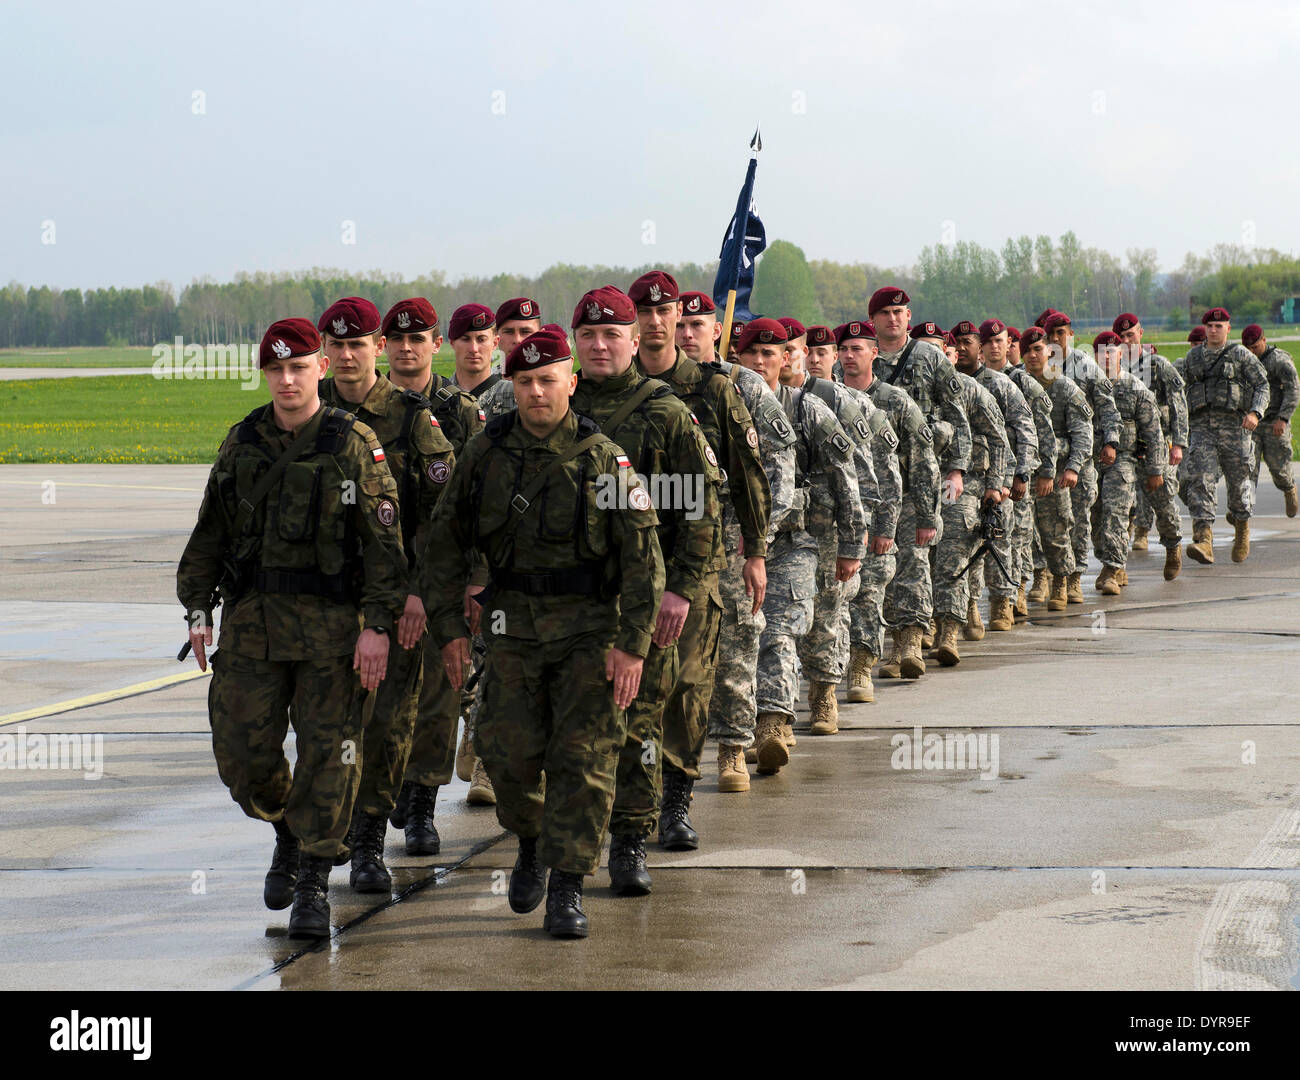 Les parachutistes de l'Armée américaine à la 173e Airborne Brigade Combat Team arrivent aux côtés de l'armée polonaise mars 6e Brigade aéroportée à l'arrivée le 23 avril 2014 à Swidwin, Pologne. Les soldats ont été déployés à la Pologne et les pays baltes comme montée des tensions avec la Russie sur l'Ukraine. Banque D'Images